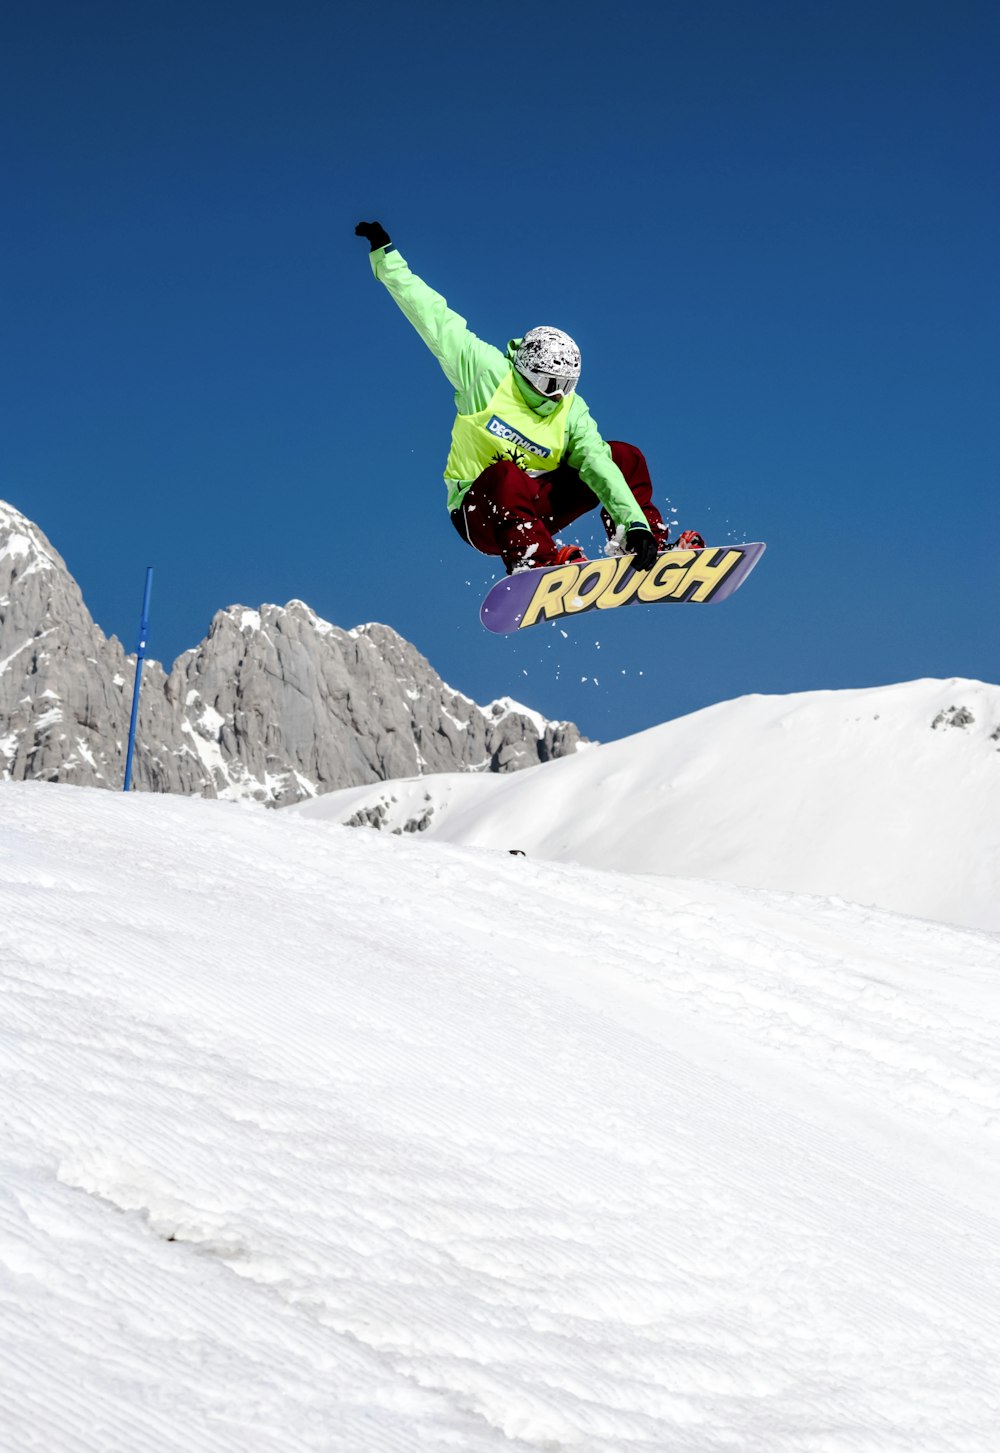 Mann in grüner Jacke fährt tagsüber Snowboard auf schneebedeckten Bergen